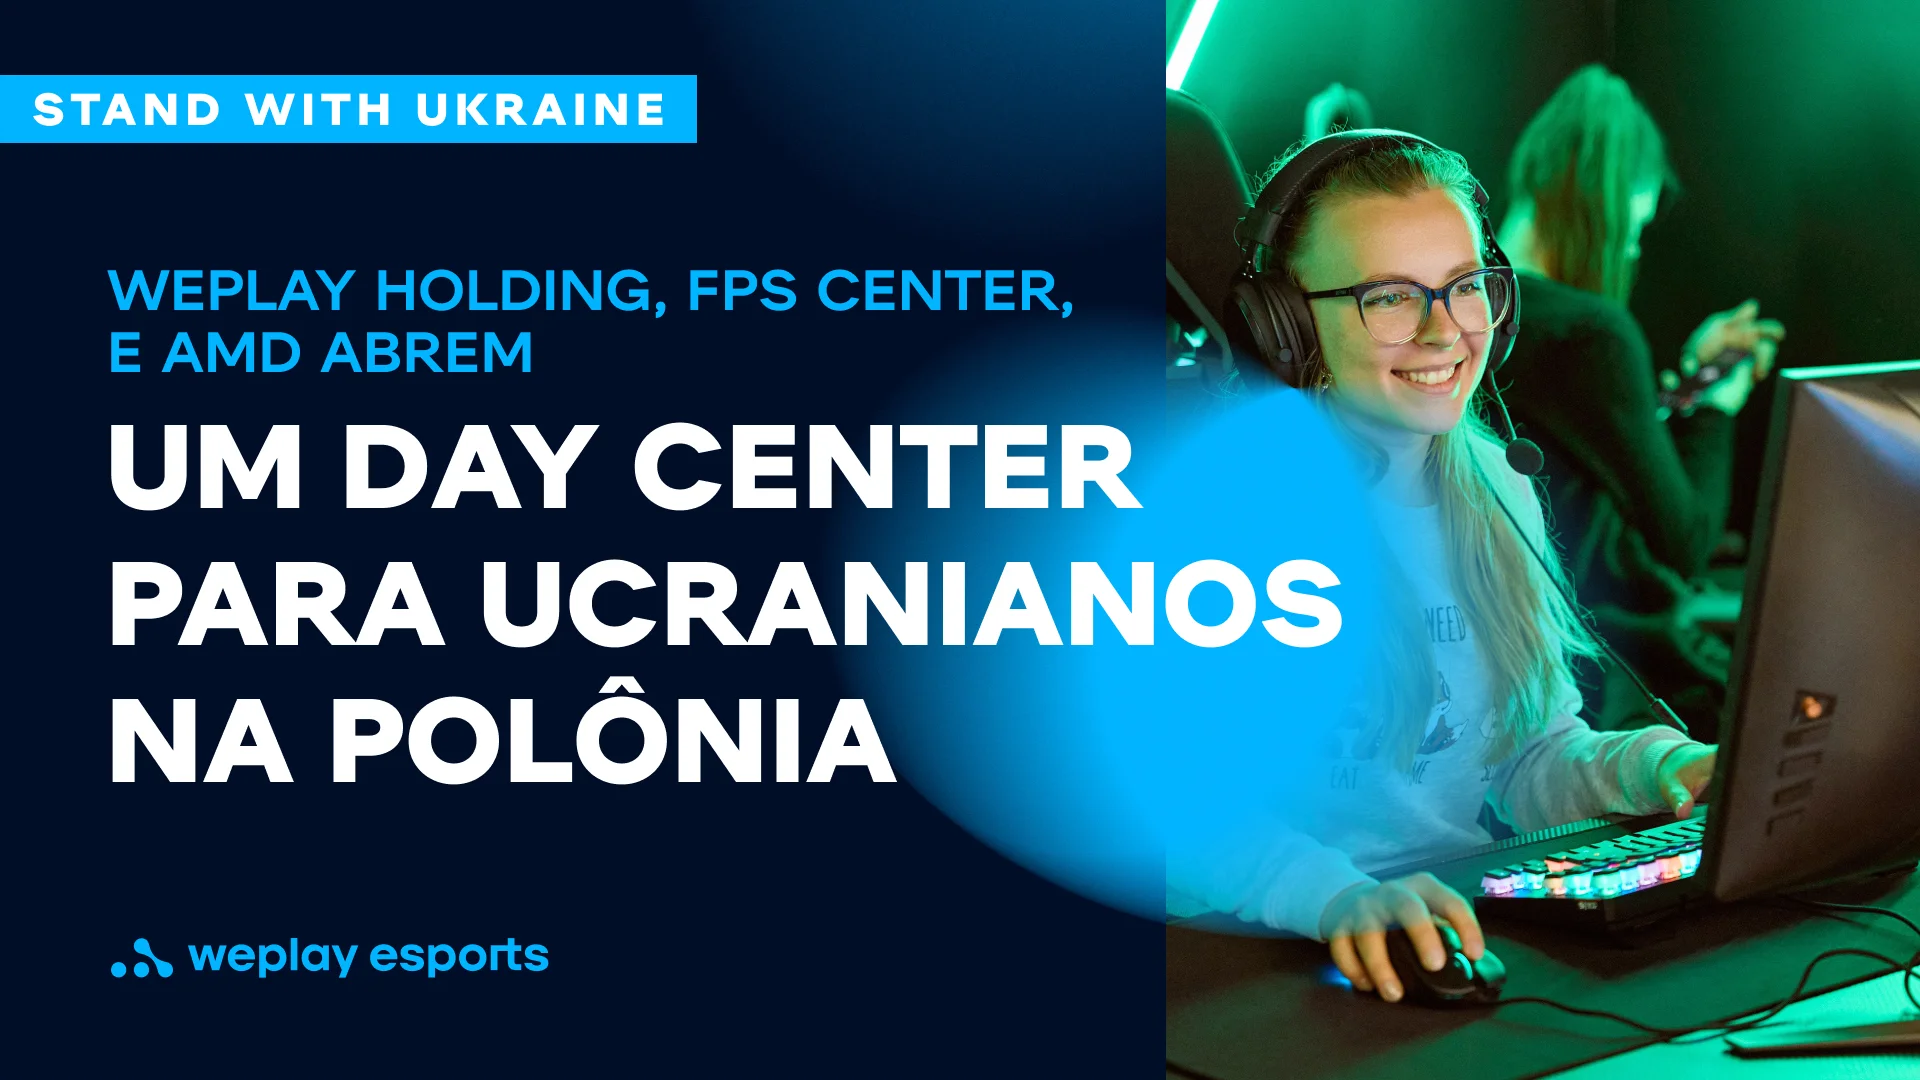 WePlay Holding, FPS Center, e AMD abrem um Day Center para ucranianos na Polônia. Imagem: WePlay Holding